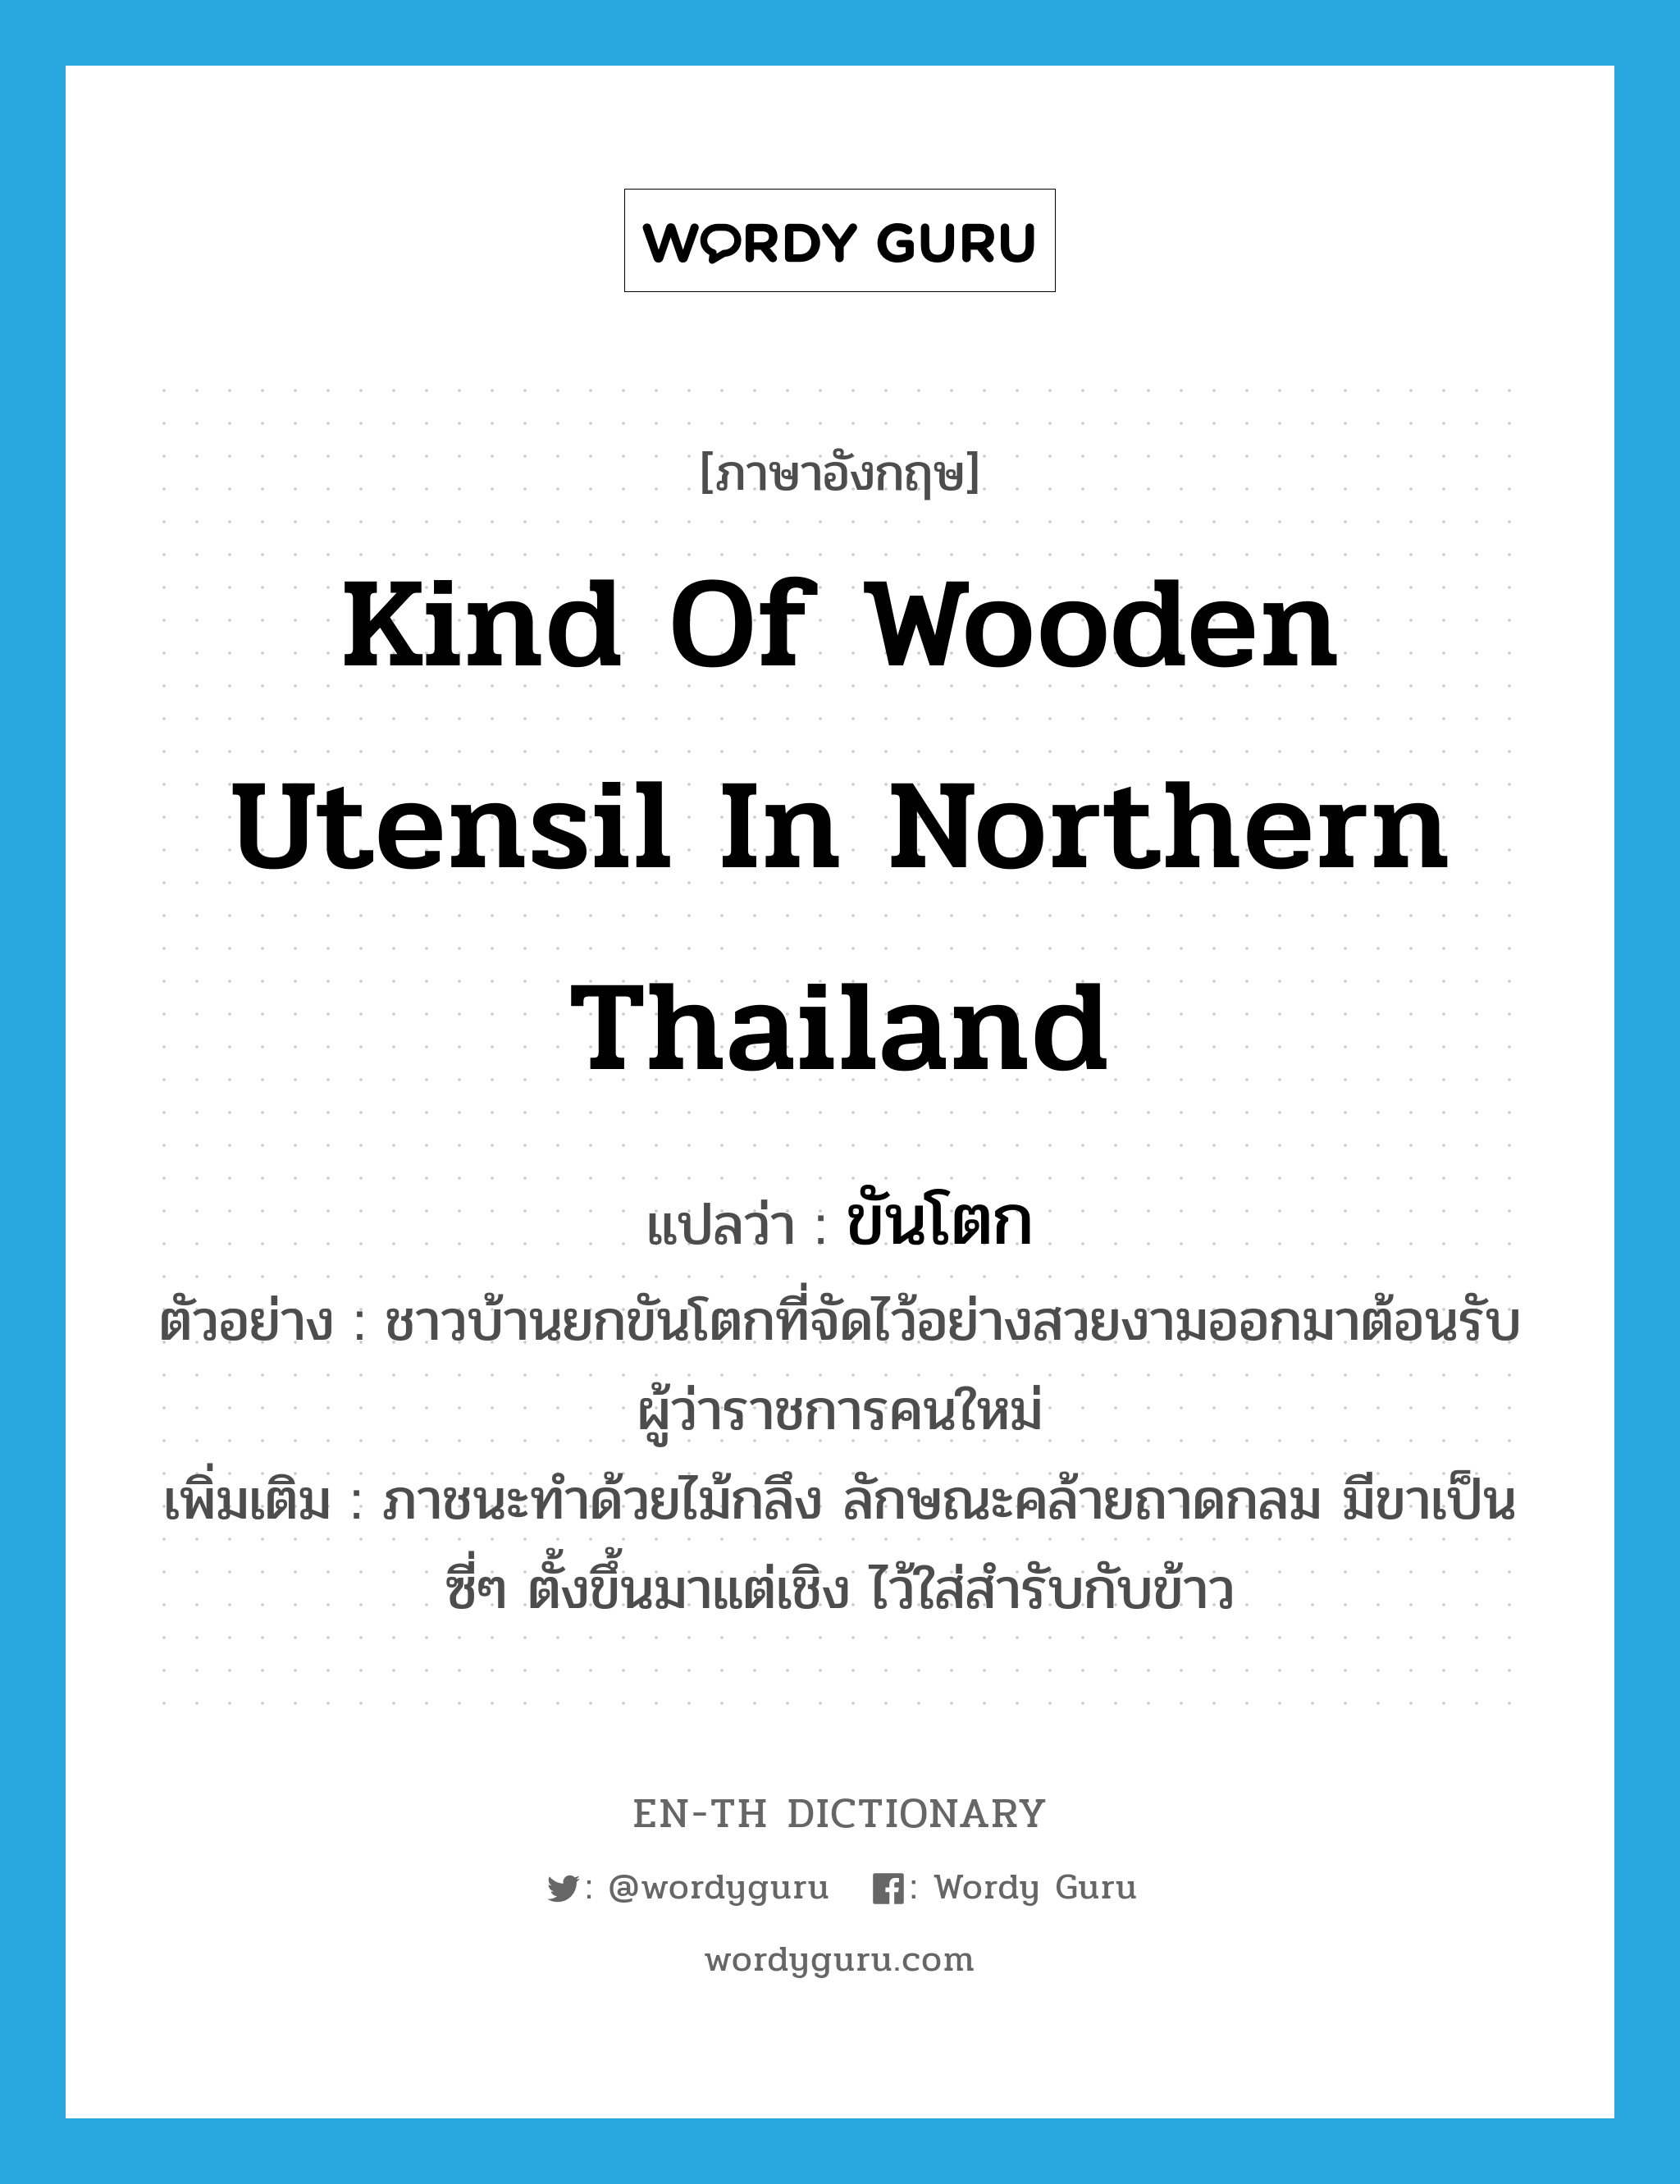 ขันโตก ภาษาอังกฤษ?, คำศัพท์ภาษาอังกฤษ ขันโตก แปลว่า kind of wooden utensil in northern Thailand ประเภท N ตัวอย่าง ชาวบ้านยกขันโตกที่จัดไว้อย่างสวยงามออกมาต้อนรับผู้ว่าราชการคนใหม่ เพิ่มเติม ภาชนะทำด้วยไม้กลึง ลักษณะคล้ายถาดกลม มีขาเป็นซี่ๆ ตั้งขึ้นมาแต่เชิง ไว้ใส่สำรับกับข้าว หมวด N